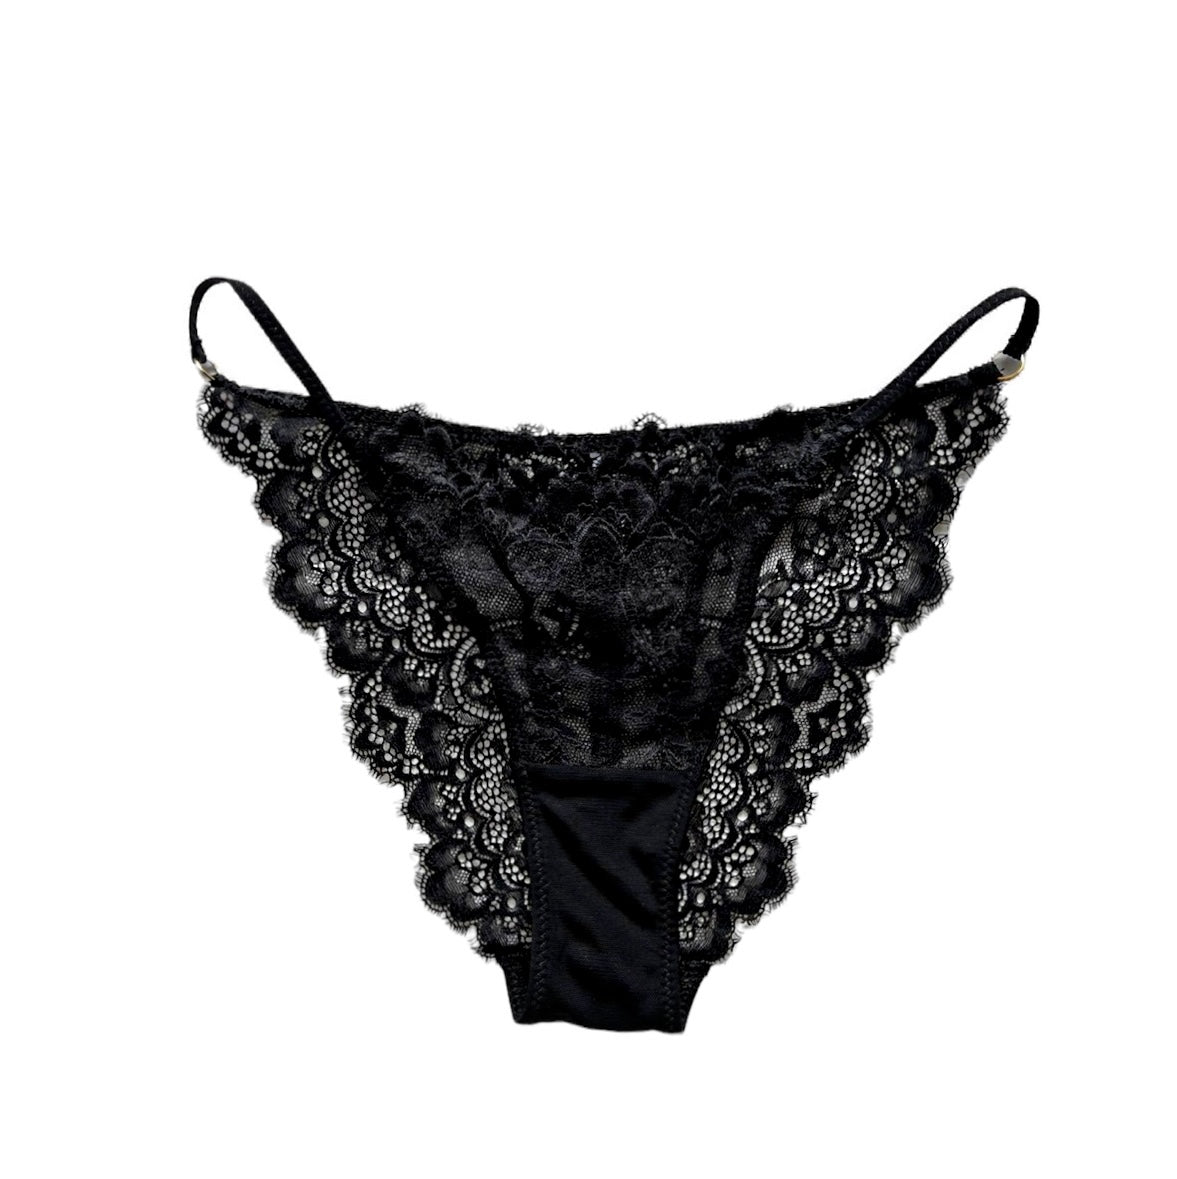 Brazilian brief in Black lace – Fefelova Brand